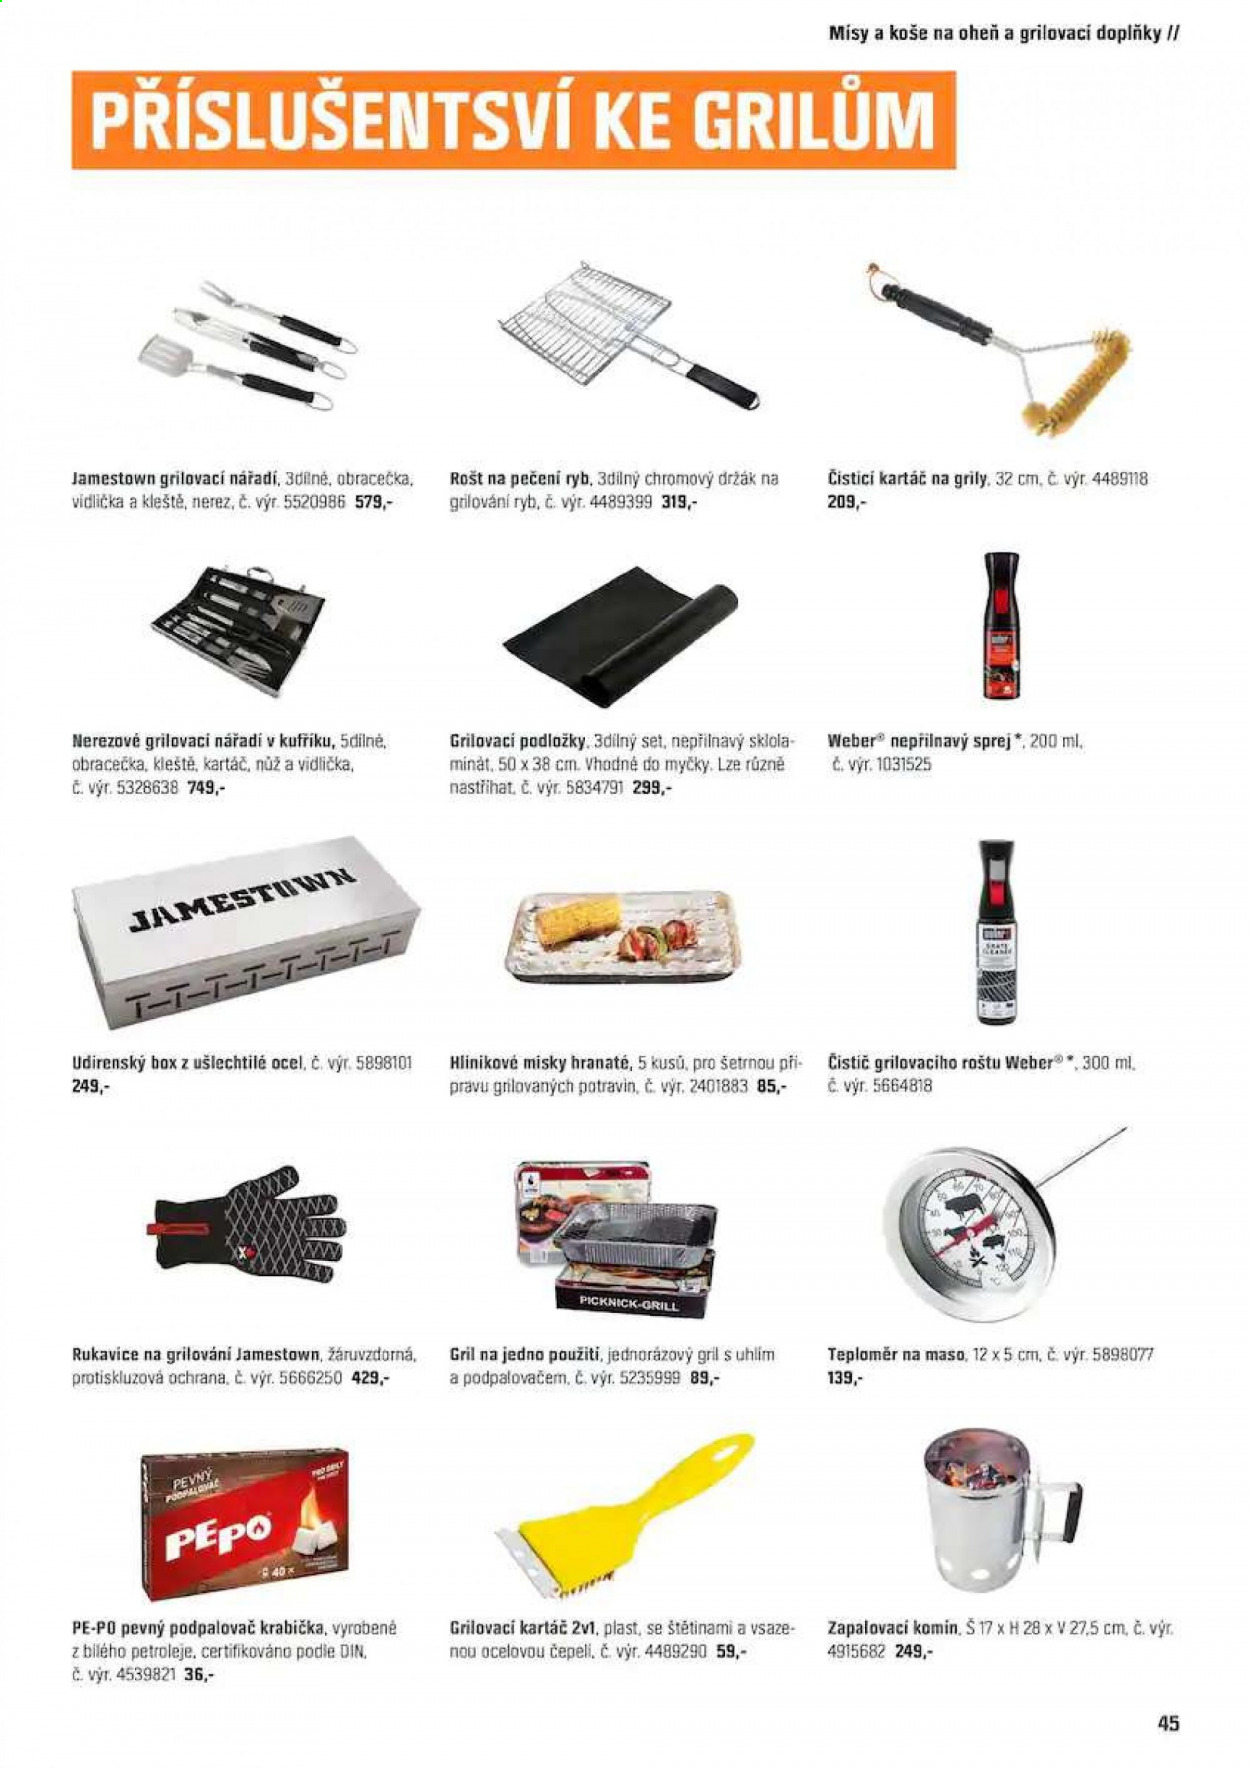 thumbnail - Leták OBI - Produkty v akci - Weber, podpalovač, Pepo, pevný podpalovač, rukavice, grilovací náčiní, obracečka, zapalovací komín, kartáč na gril, kartáč, grilovací tácky. Strana 45.